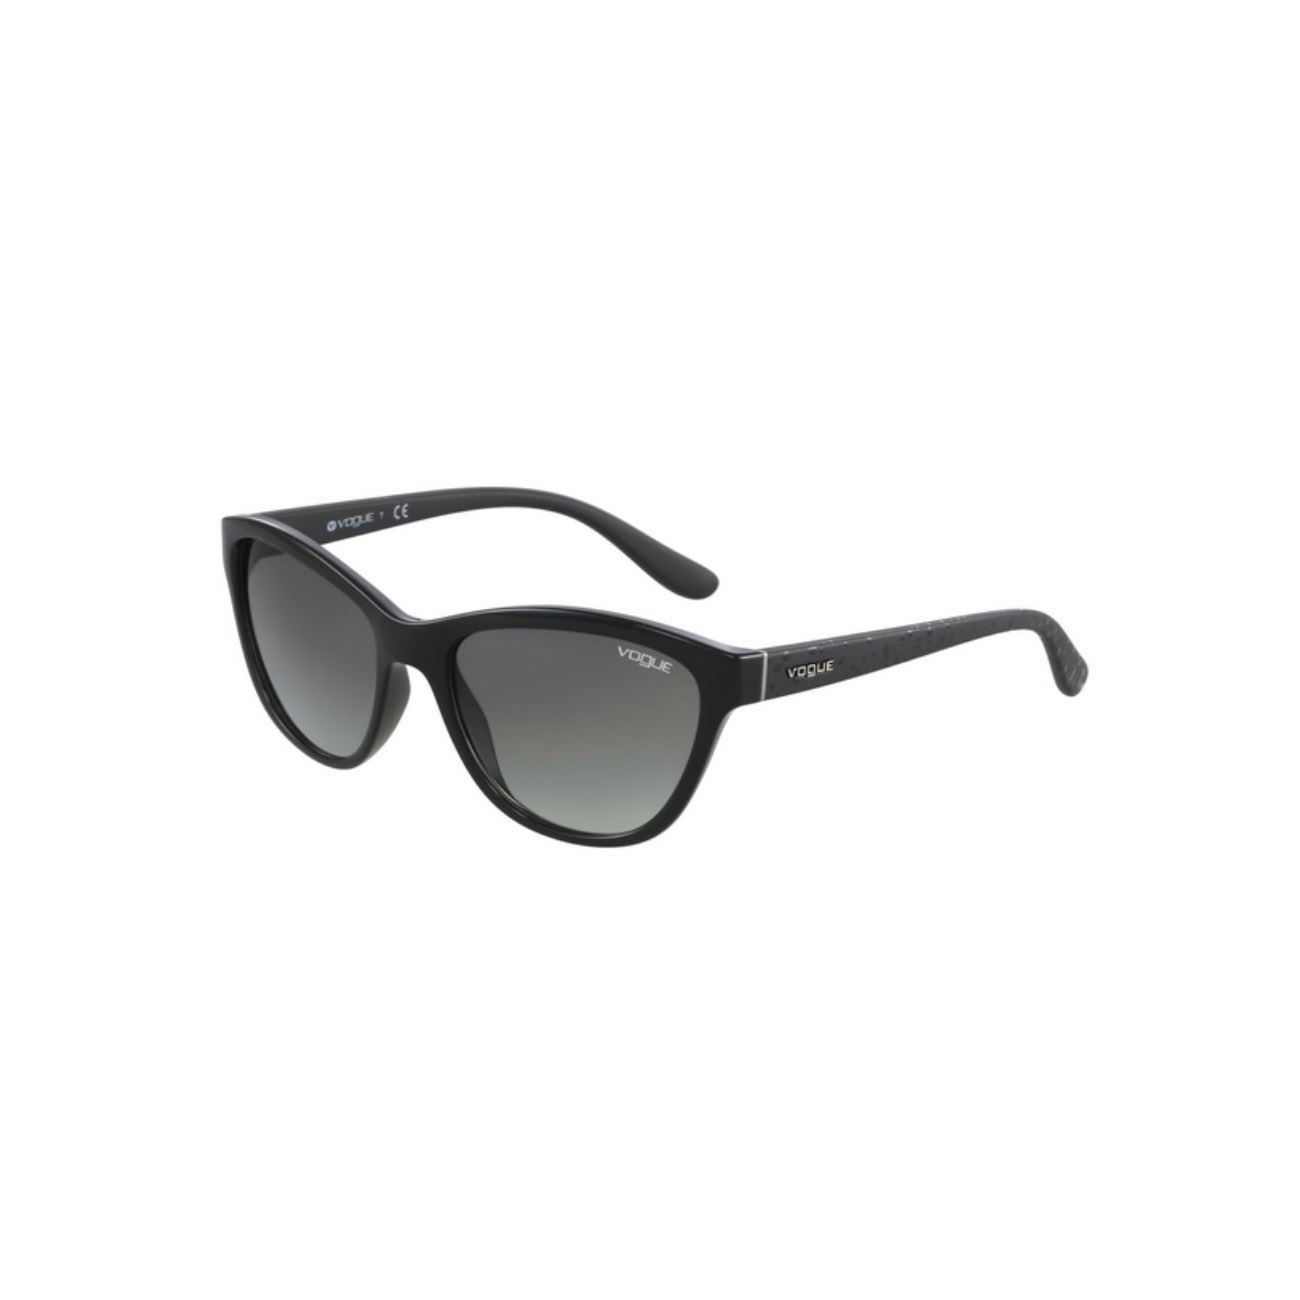 Subjetivo básico Fahrenheit Gafas de sol pasta Vogue negras 2993 - Maistendencia